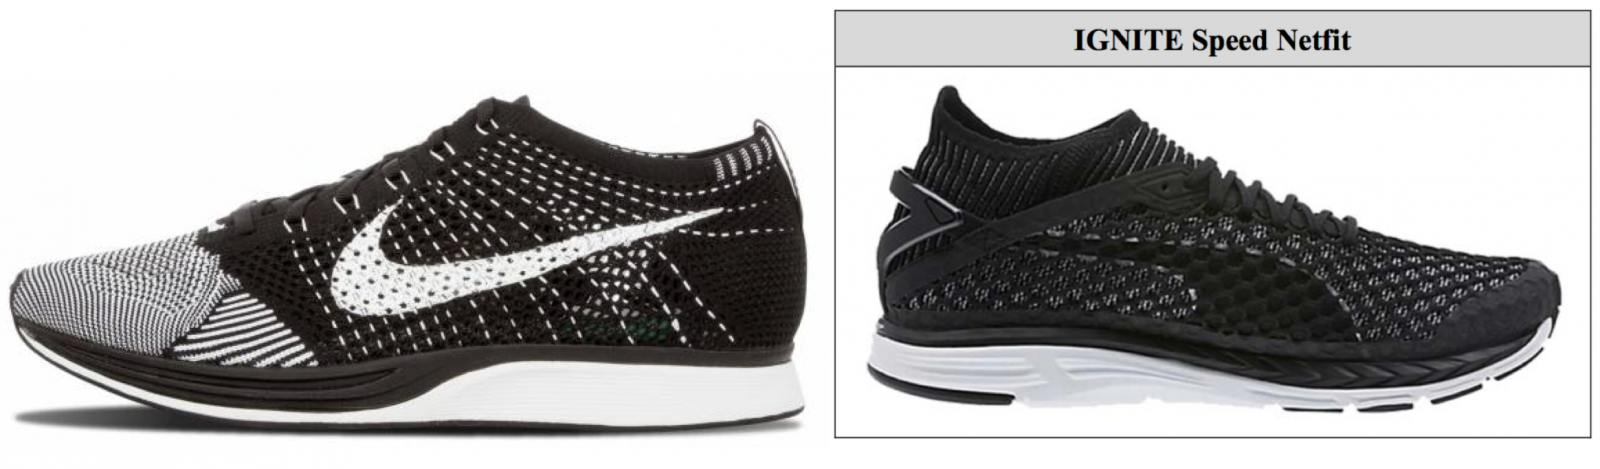  Nike Flyknit sneaker (left) & Puma's knitted sneaker (right) 